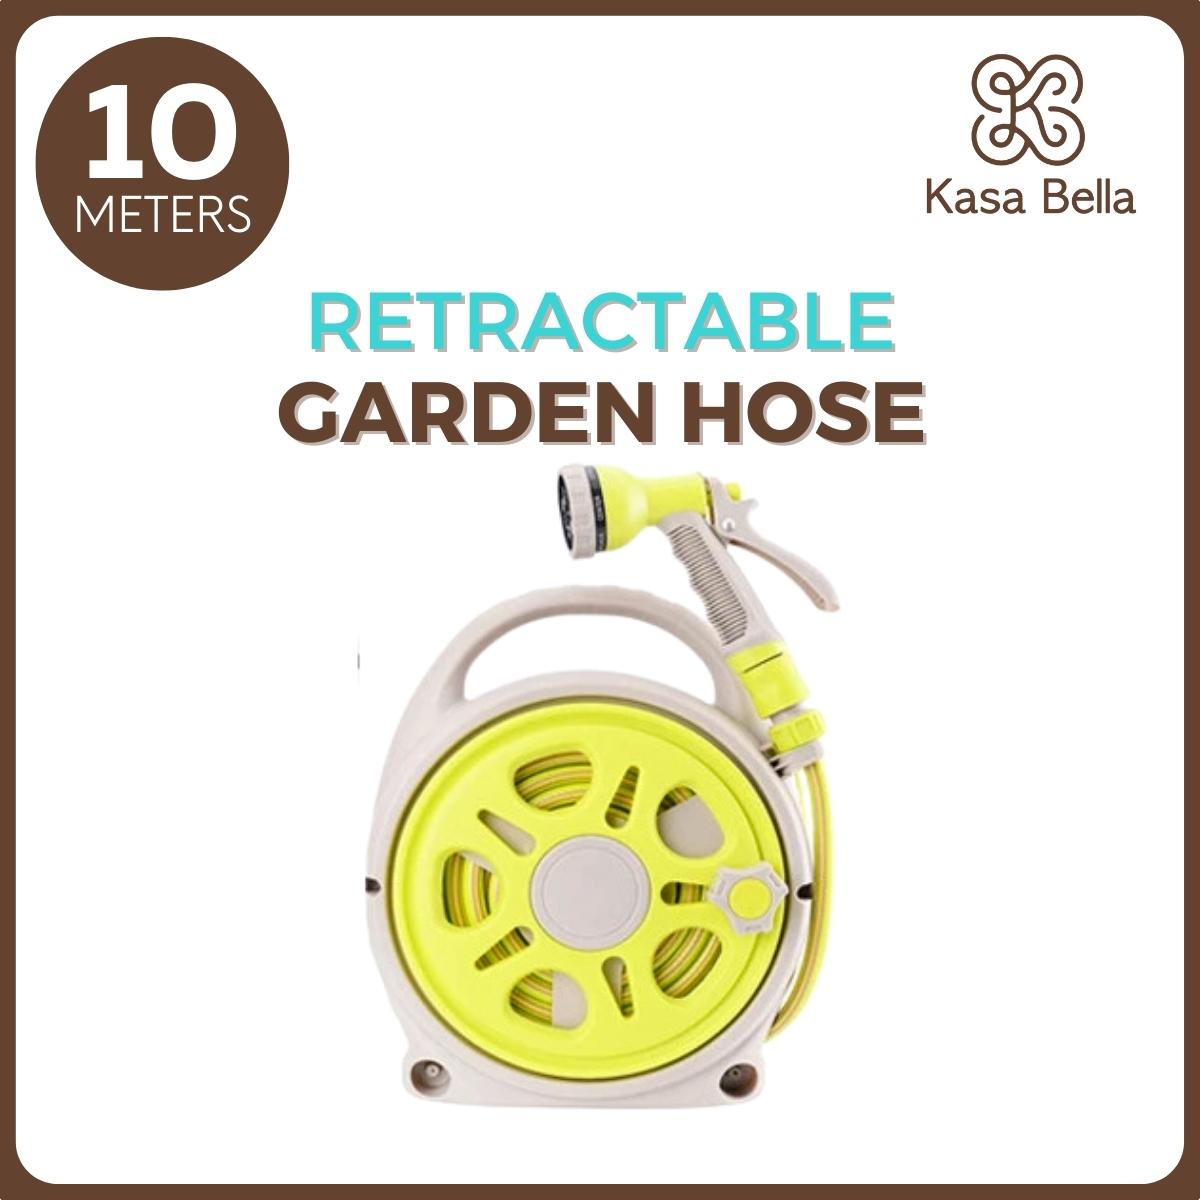 Kasa Bella - Garden Hose with Reel, Retractable Hose, Retractable Hose  Reel, Water Hose Reel, Retractable Water Hose, Retractable Garden Hose, Garden Hose Complete Set